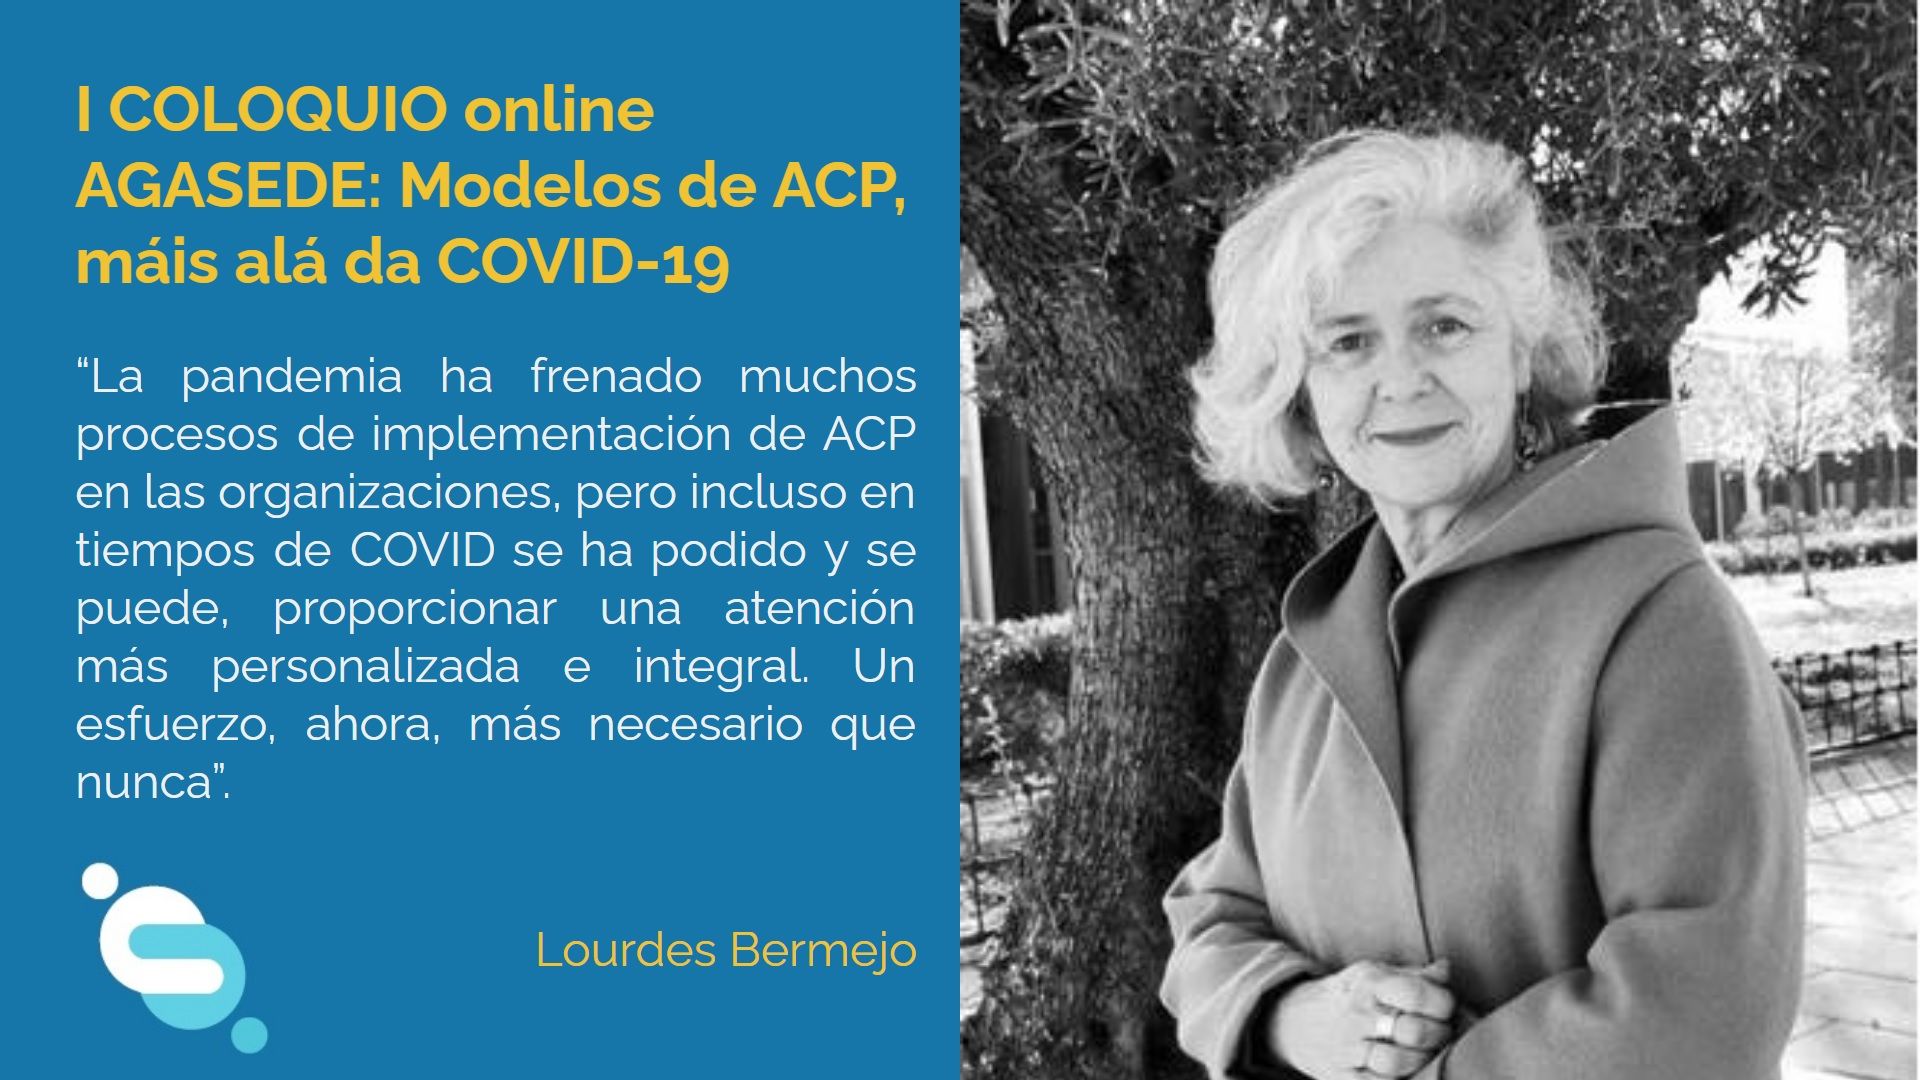 Lourdes Bermejo